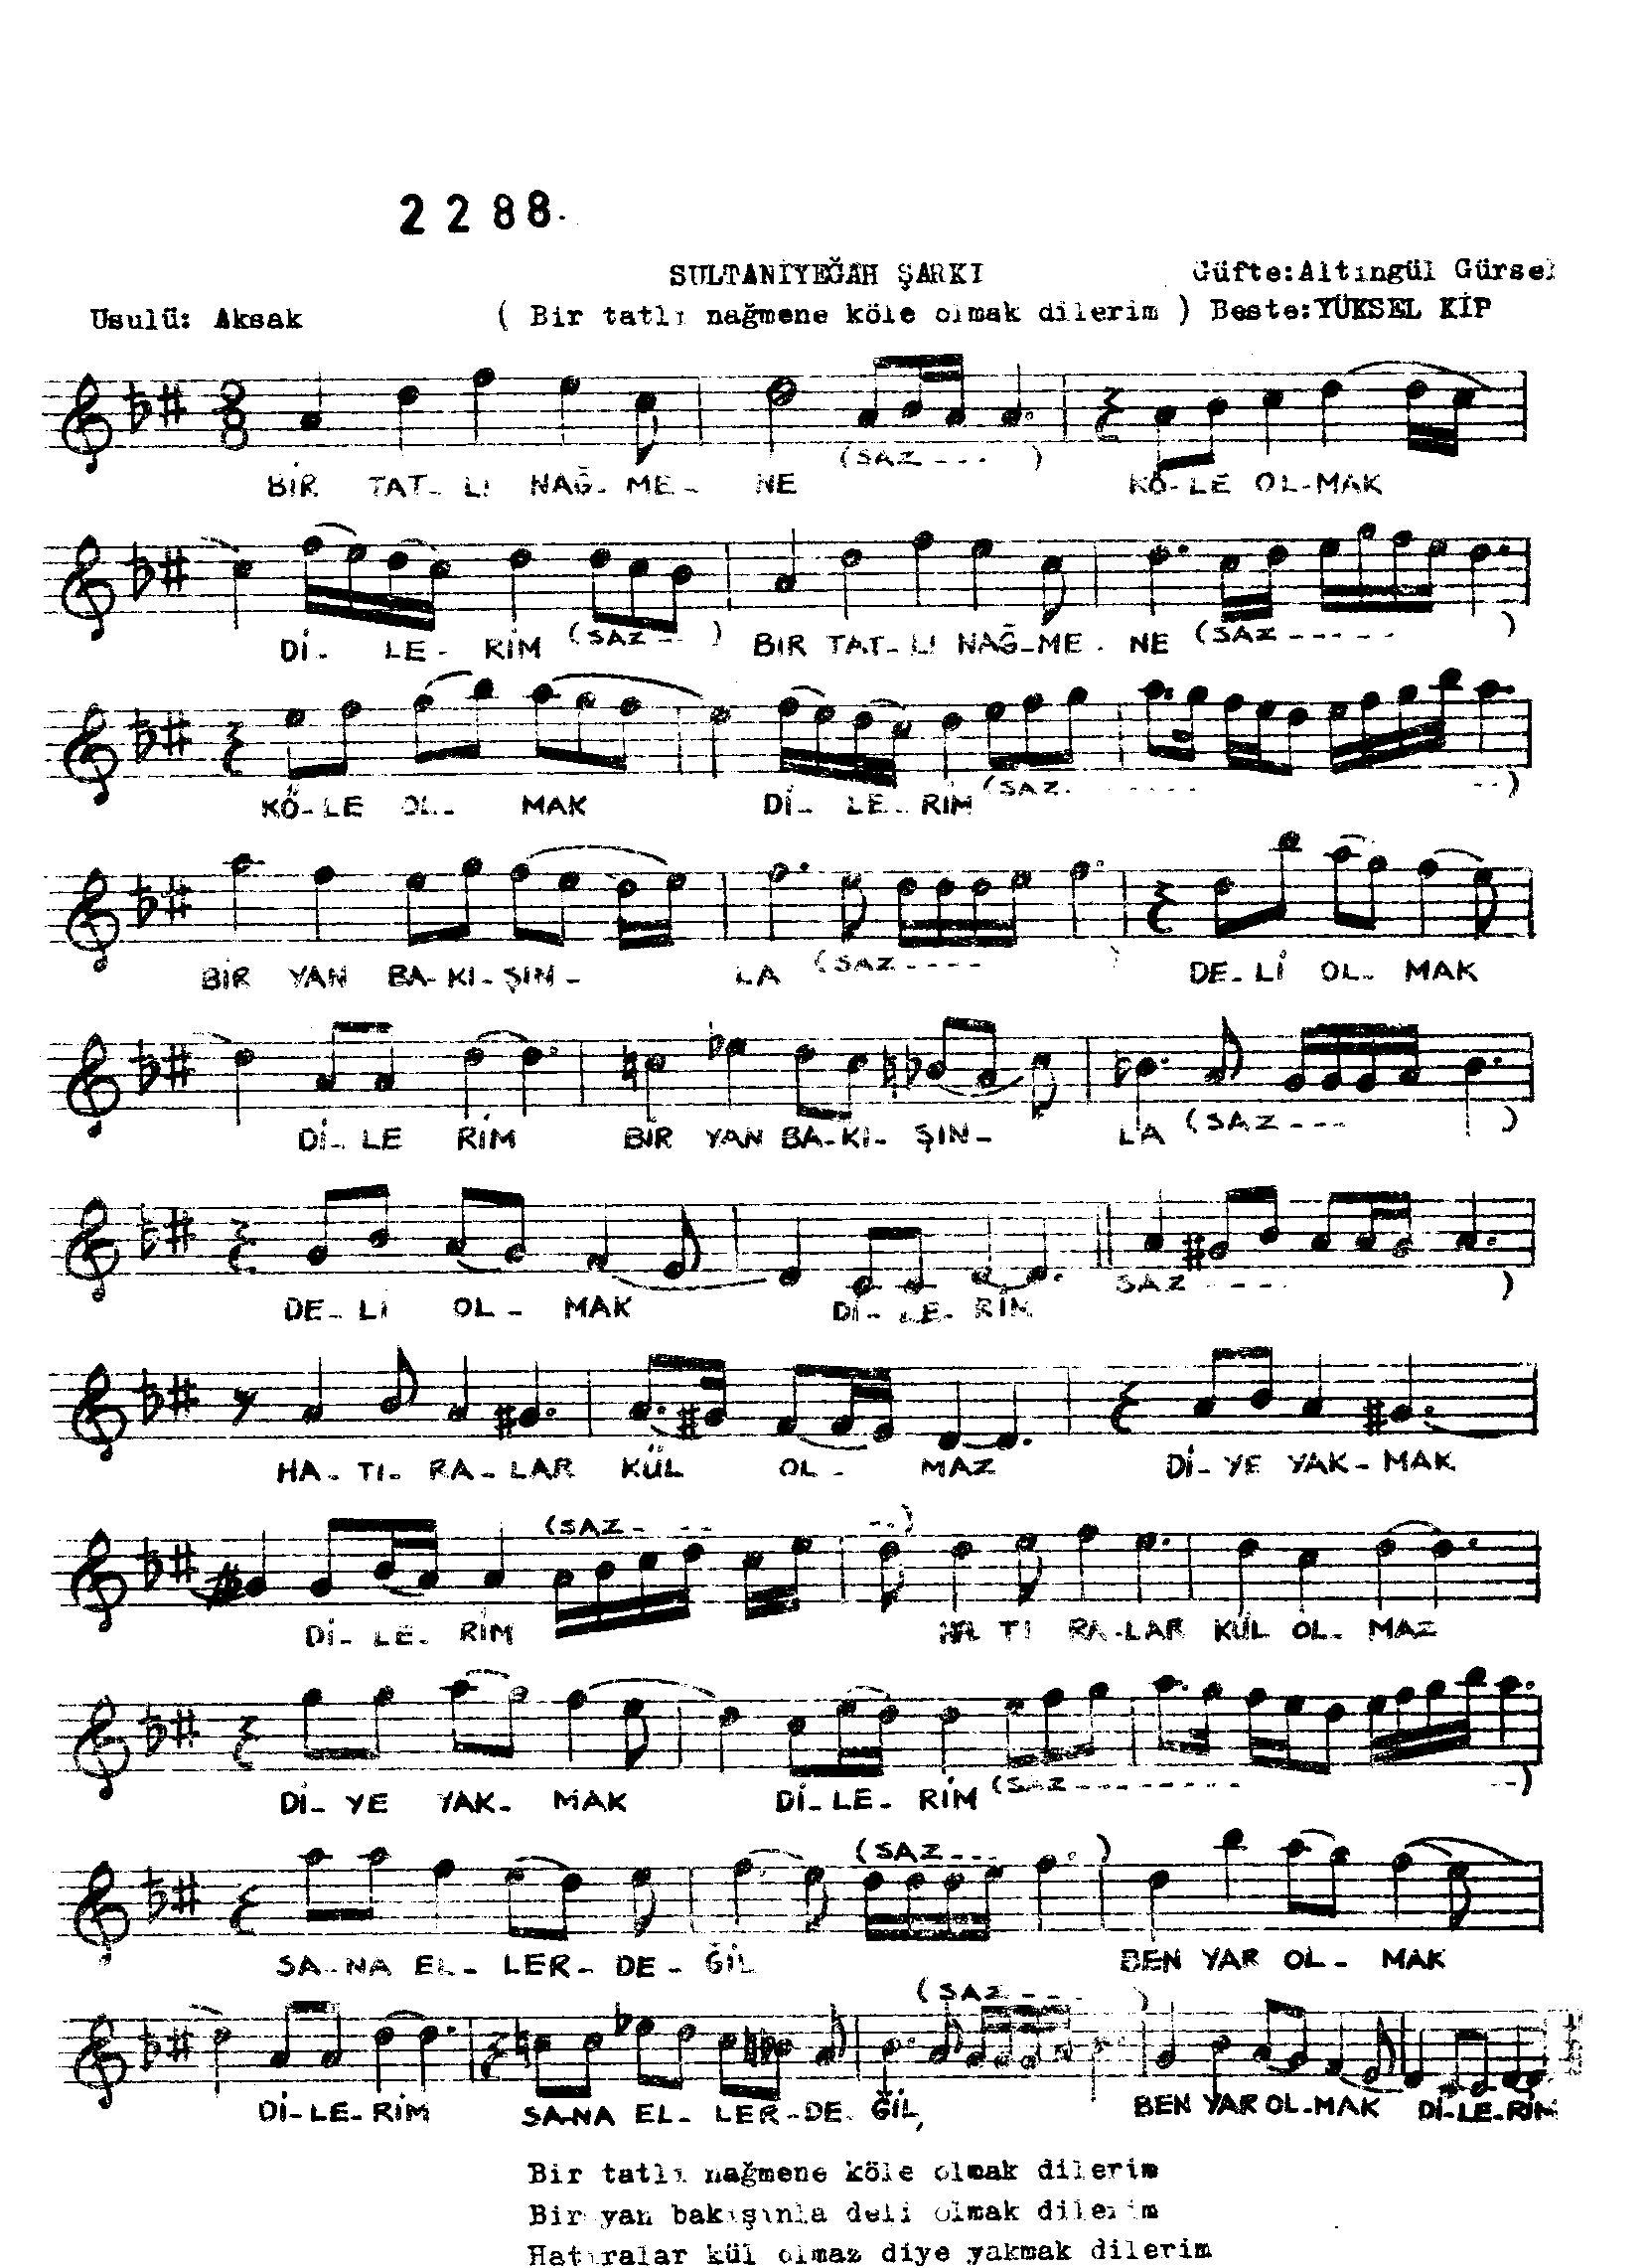 Sultânî-Yegâh - Şarkı - Yüksel Kip - Sayfa 1